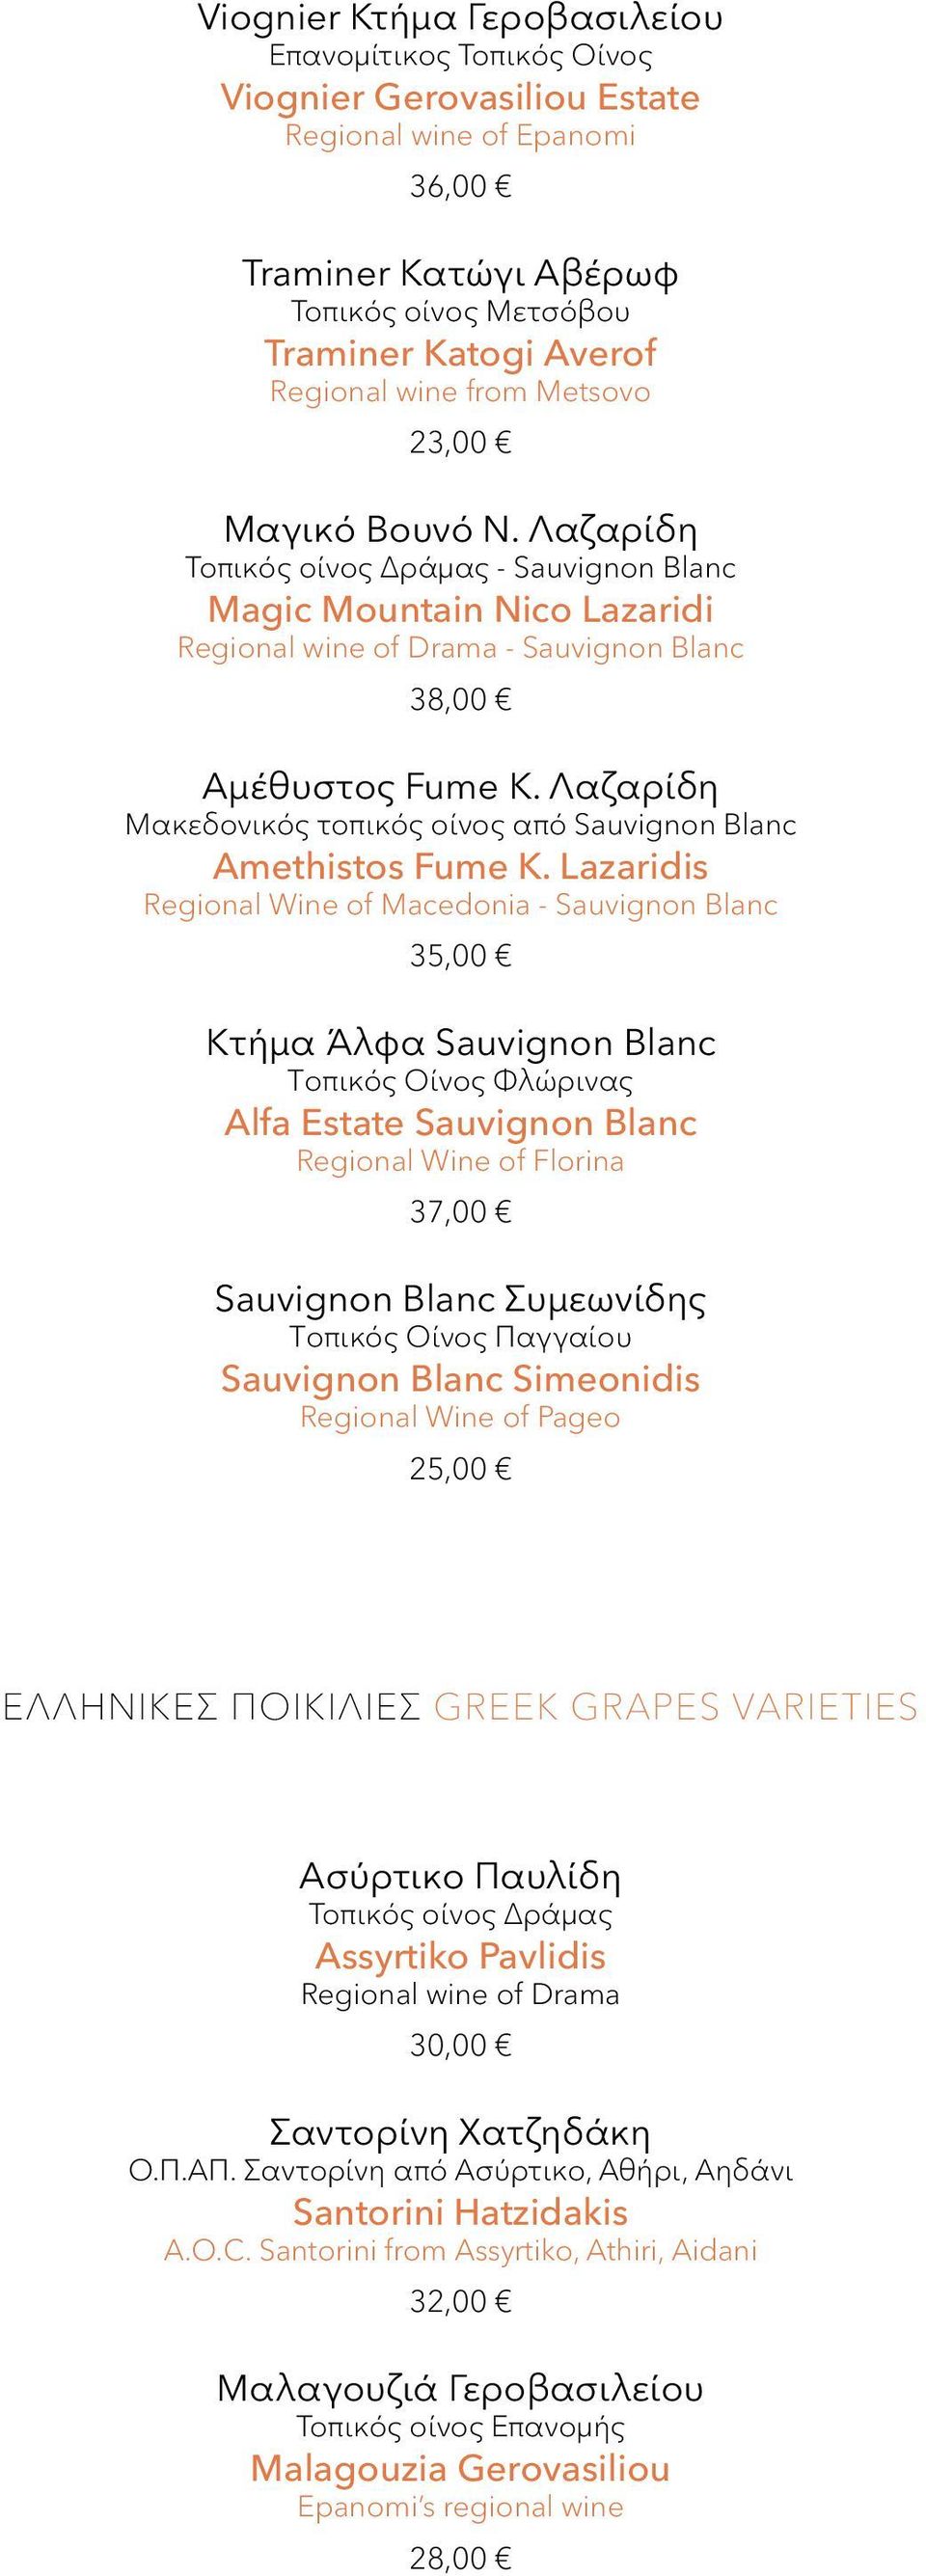 Λαζαρίδη Μακεδονικός τοπικός οίνος από Sauvignon Blanc Amethistos Fume Κ.